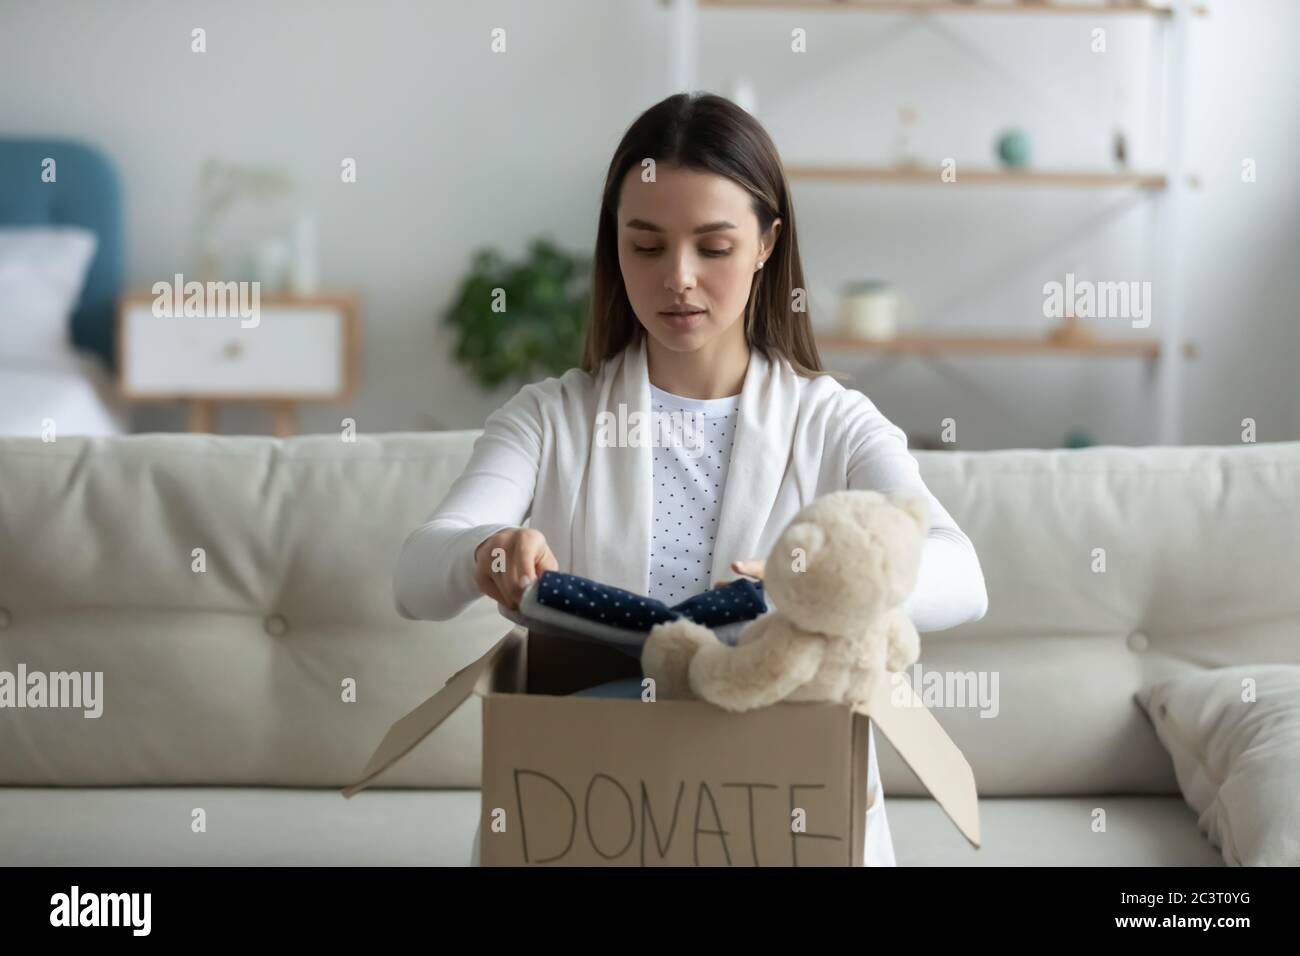 Une femme met des vêtements dans une boîte de don participe à une œuvre de charité Banque D'Images